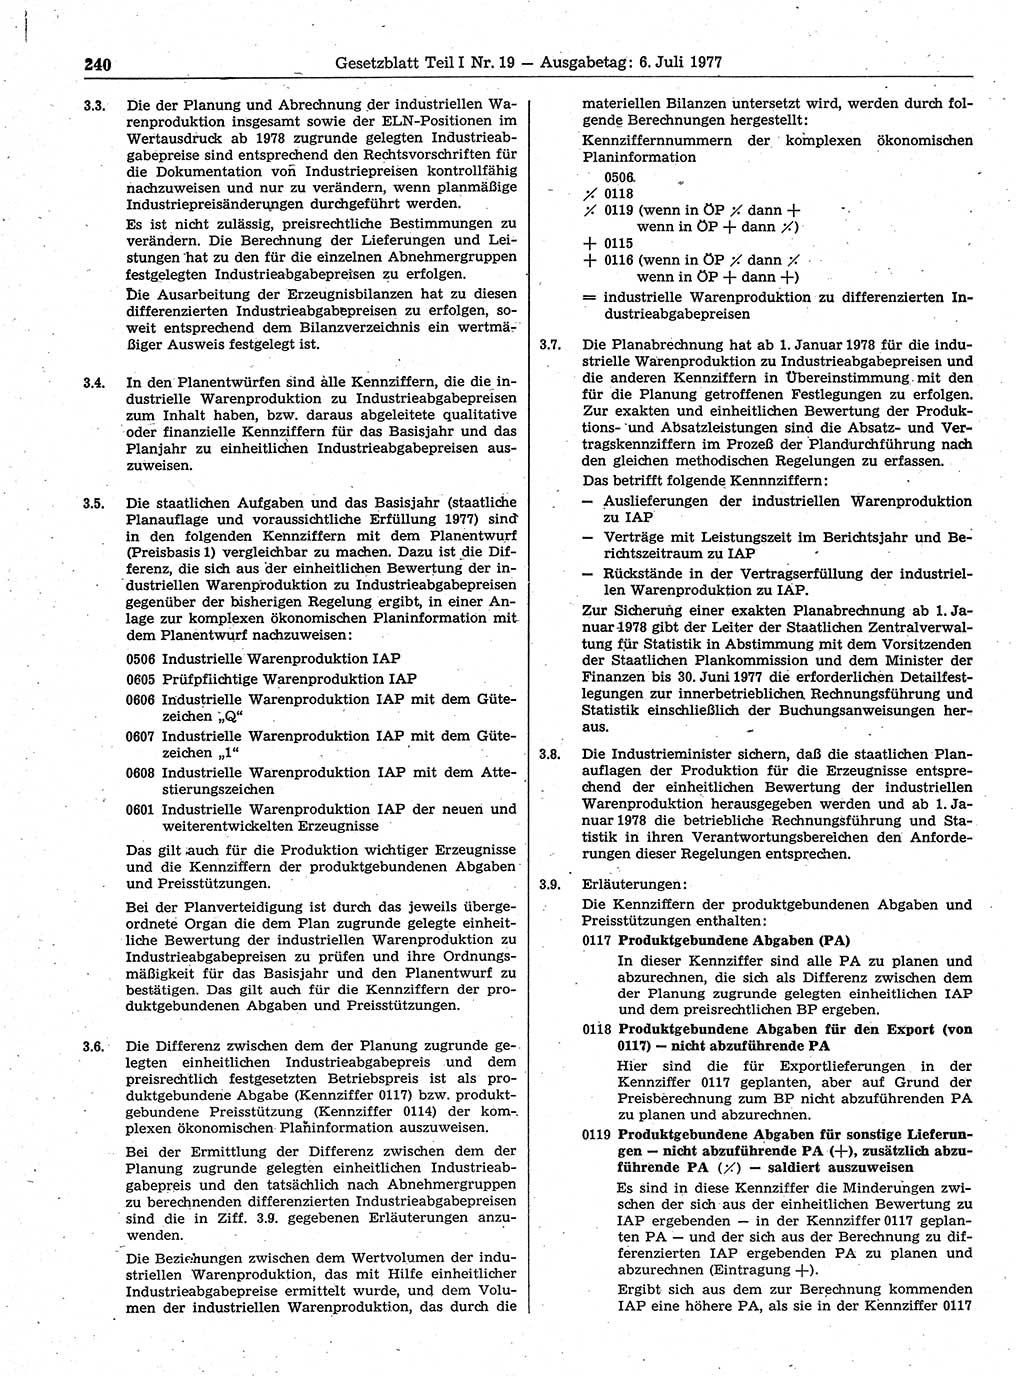 Gesetzblatt (GBl.) der Deutschen Demokratischen Republik (DDR) Teil Ⅰ 1977, Seite 240 (GBl. DDR Ⅰ 1977, S. 240)